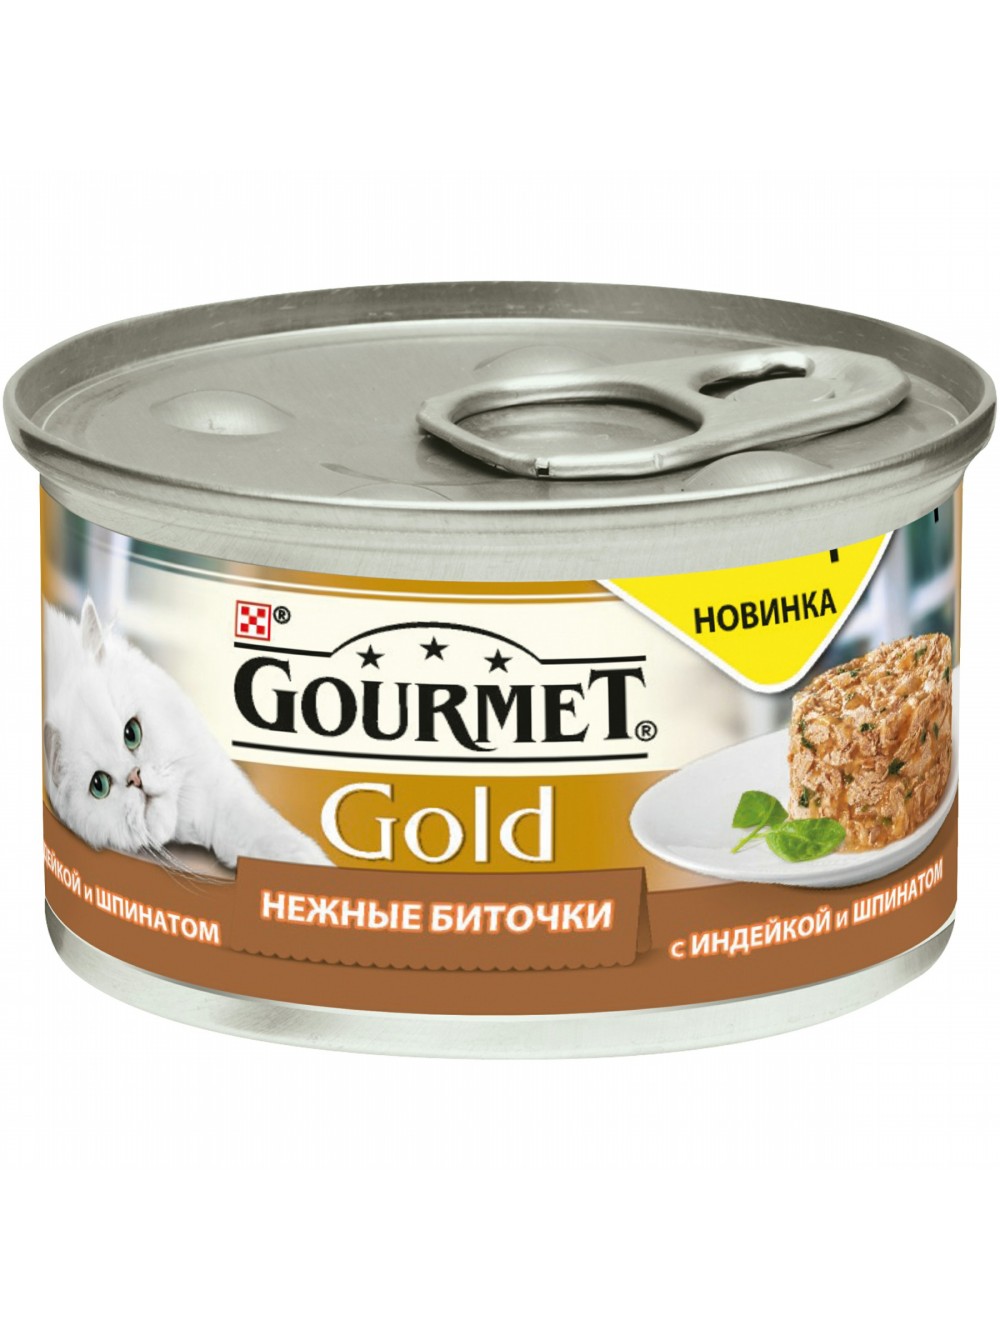 Консервы для кошек Gourmet Gold